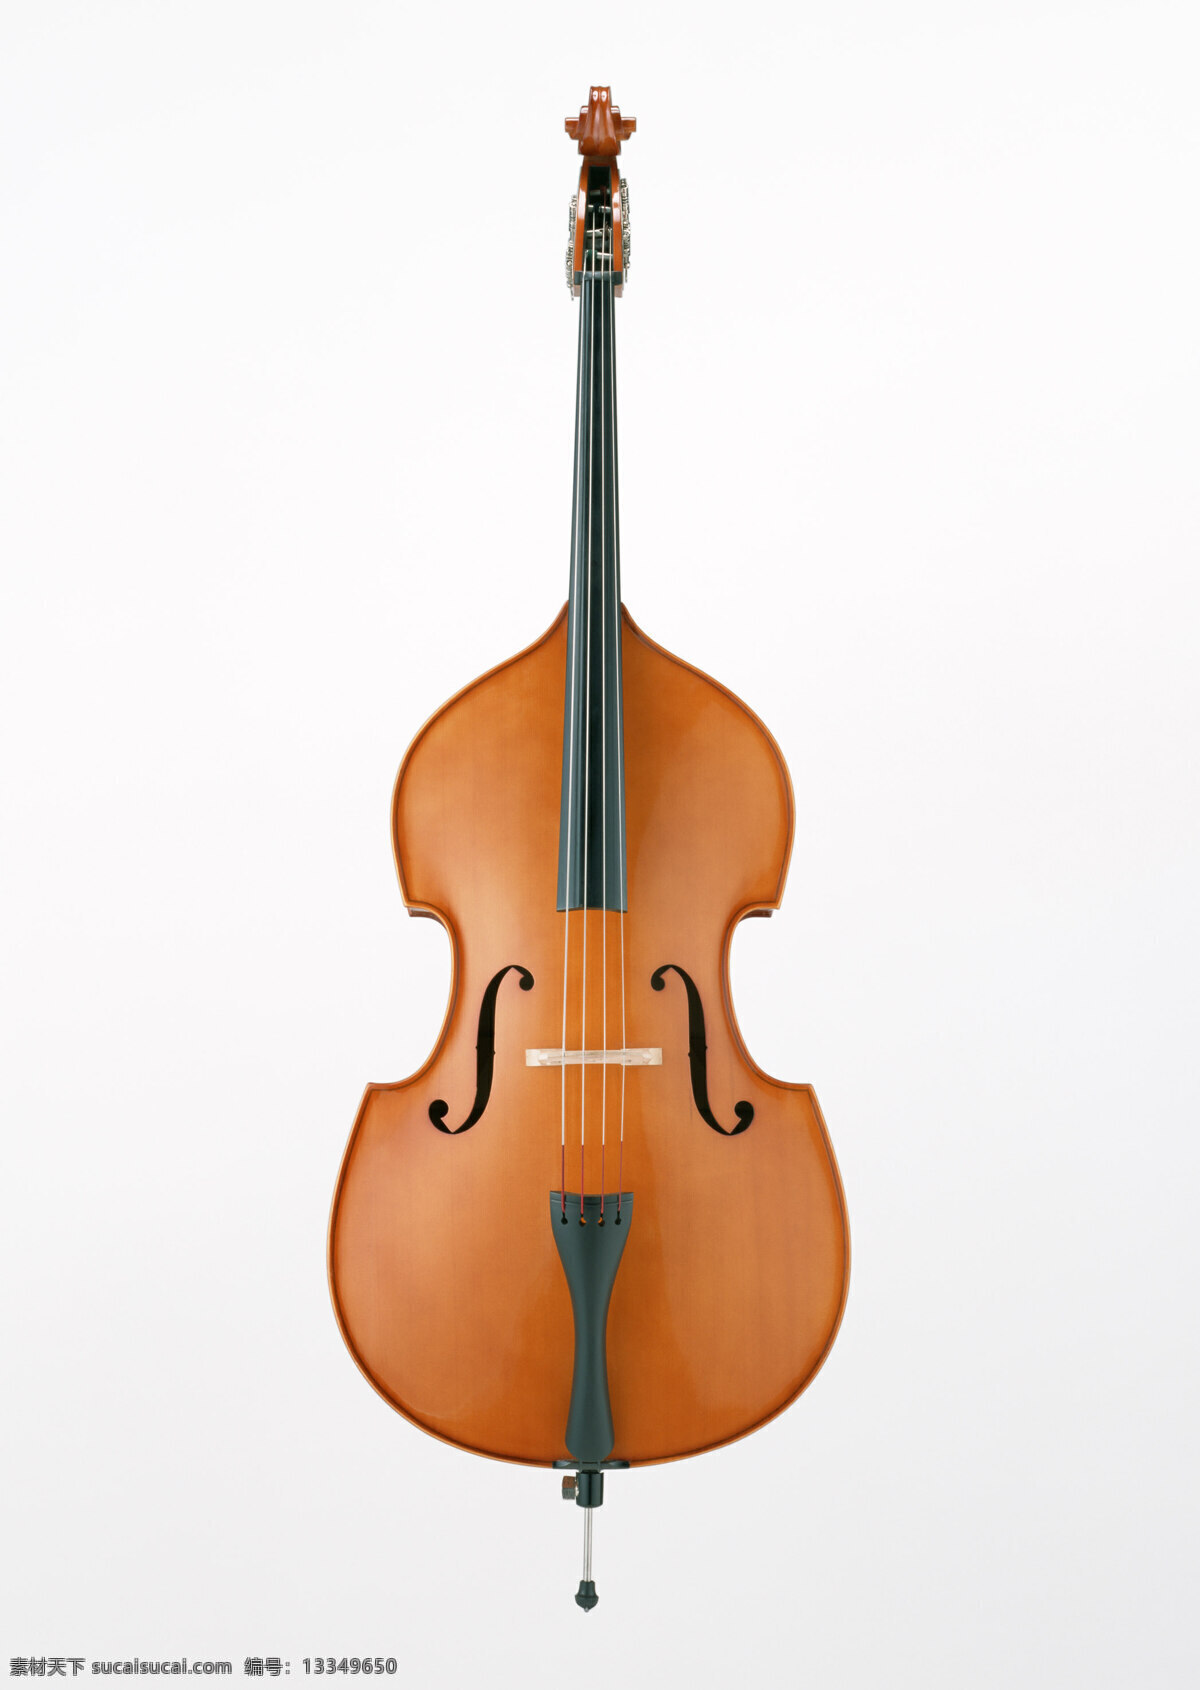 大提琴 弦乐器 乐器 西洋乐器 文化艺术 舞蹈音乐